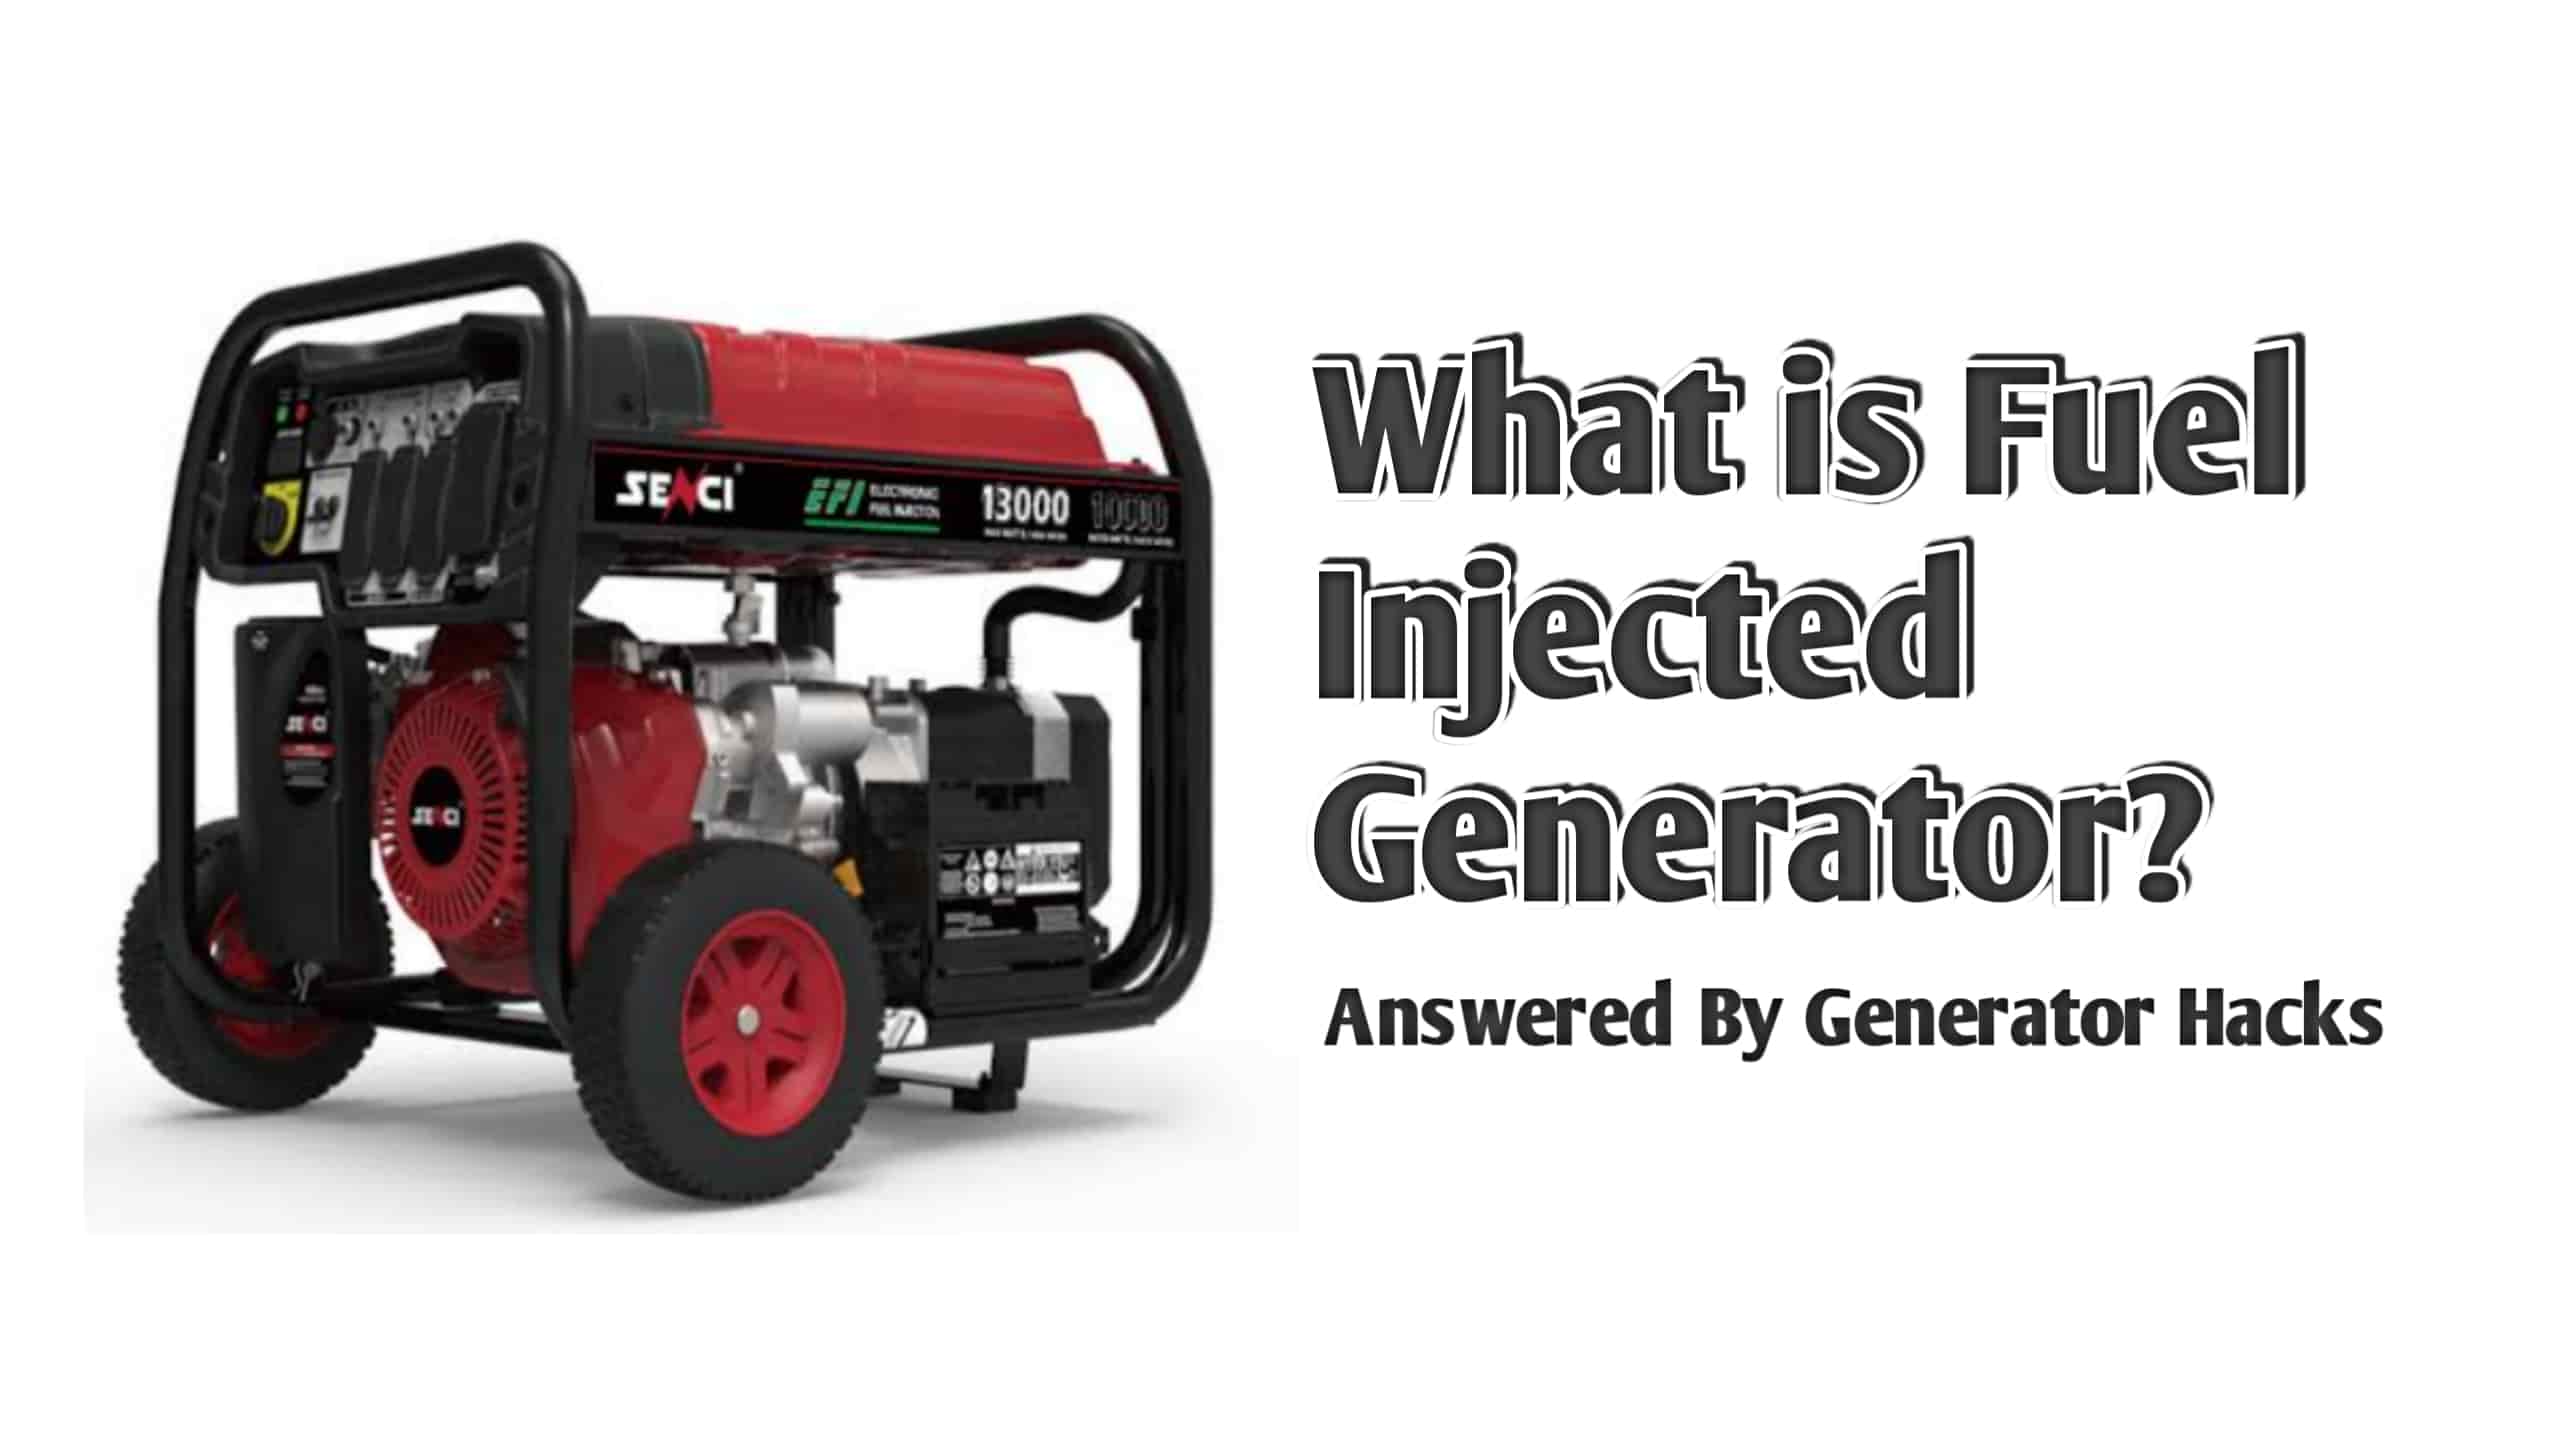 Fuel injected generator,